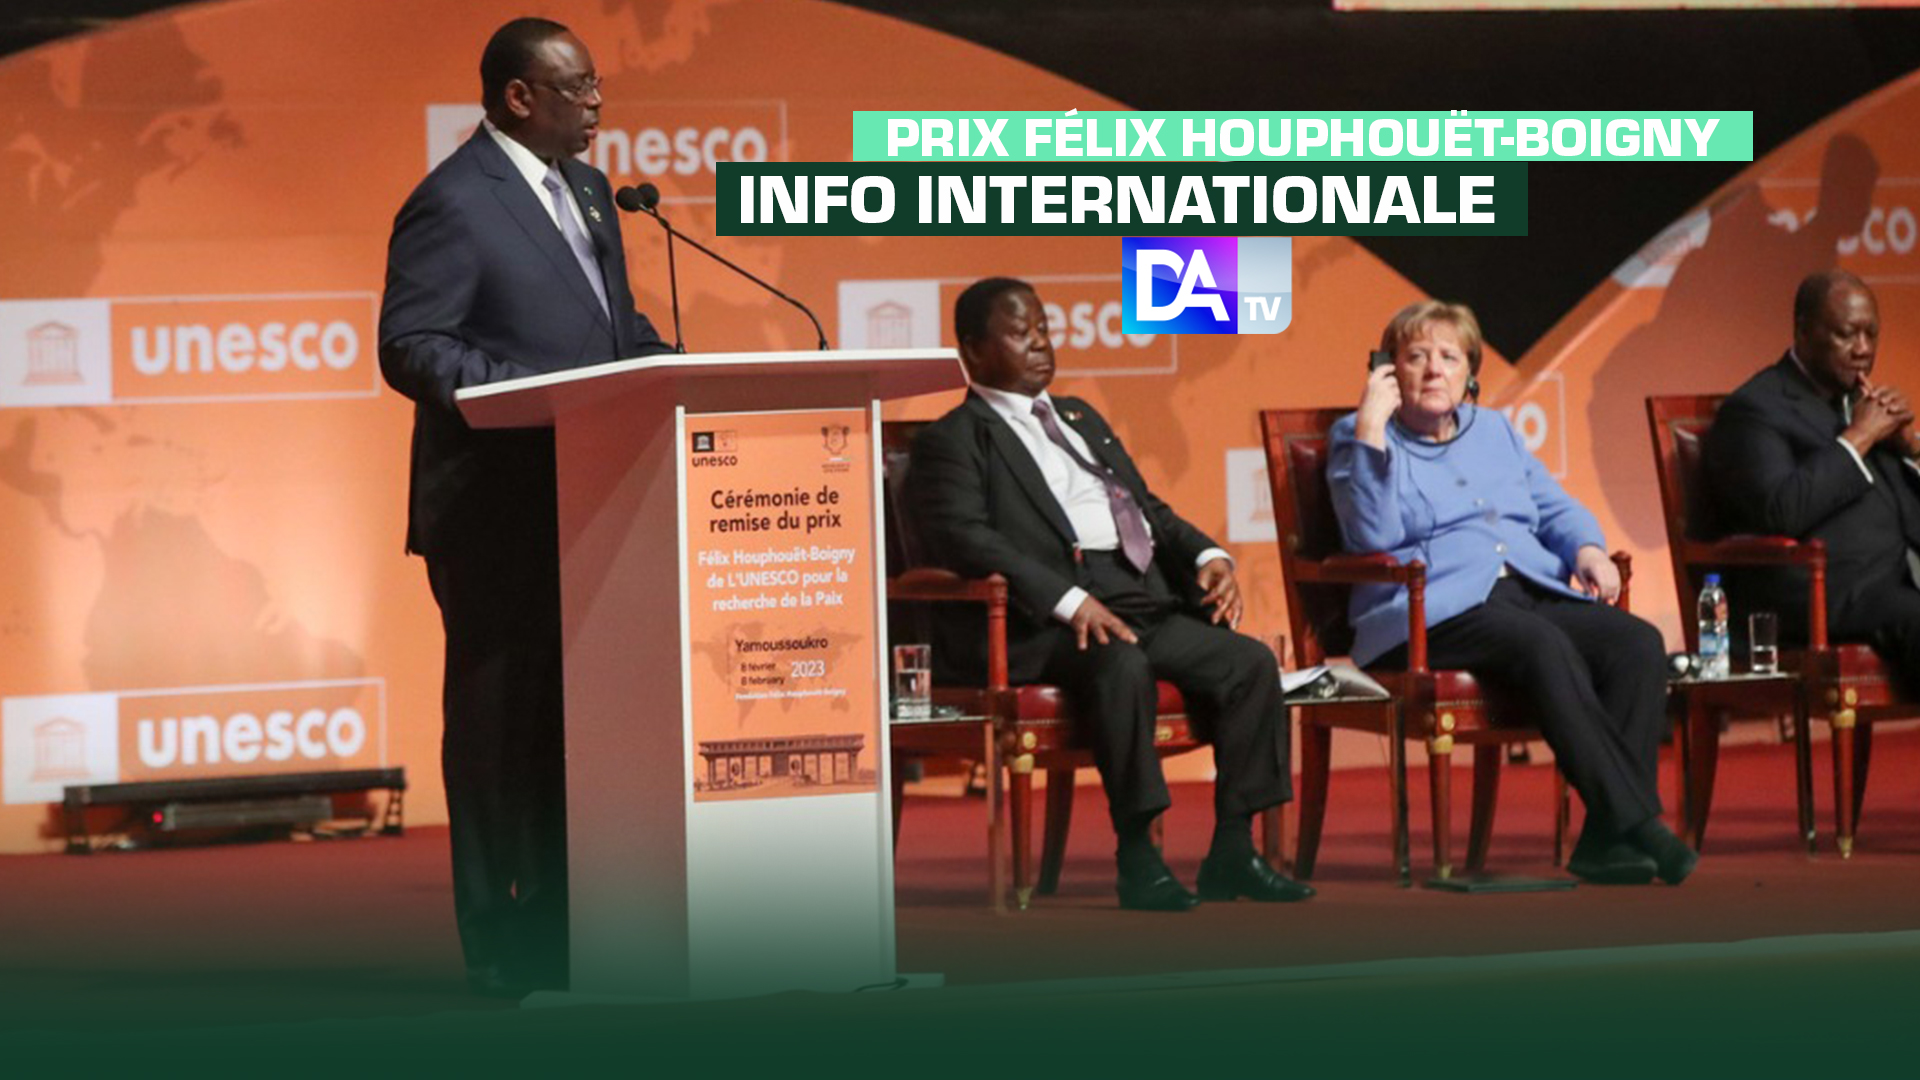 Prix Félix Houphouët-Boigny de l’UNESCO pour la recherche de la paix : " Cette cérémonie de remise du Prix...est un appel au dépôt des armes ; un appel à la paix et au vivre ensemble, en Afrique et ailleurs (Macky Sall)